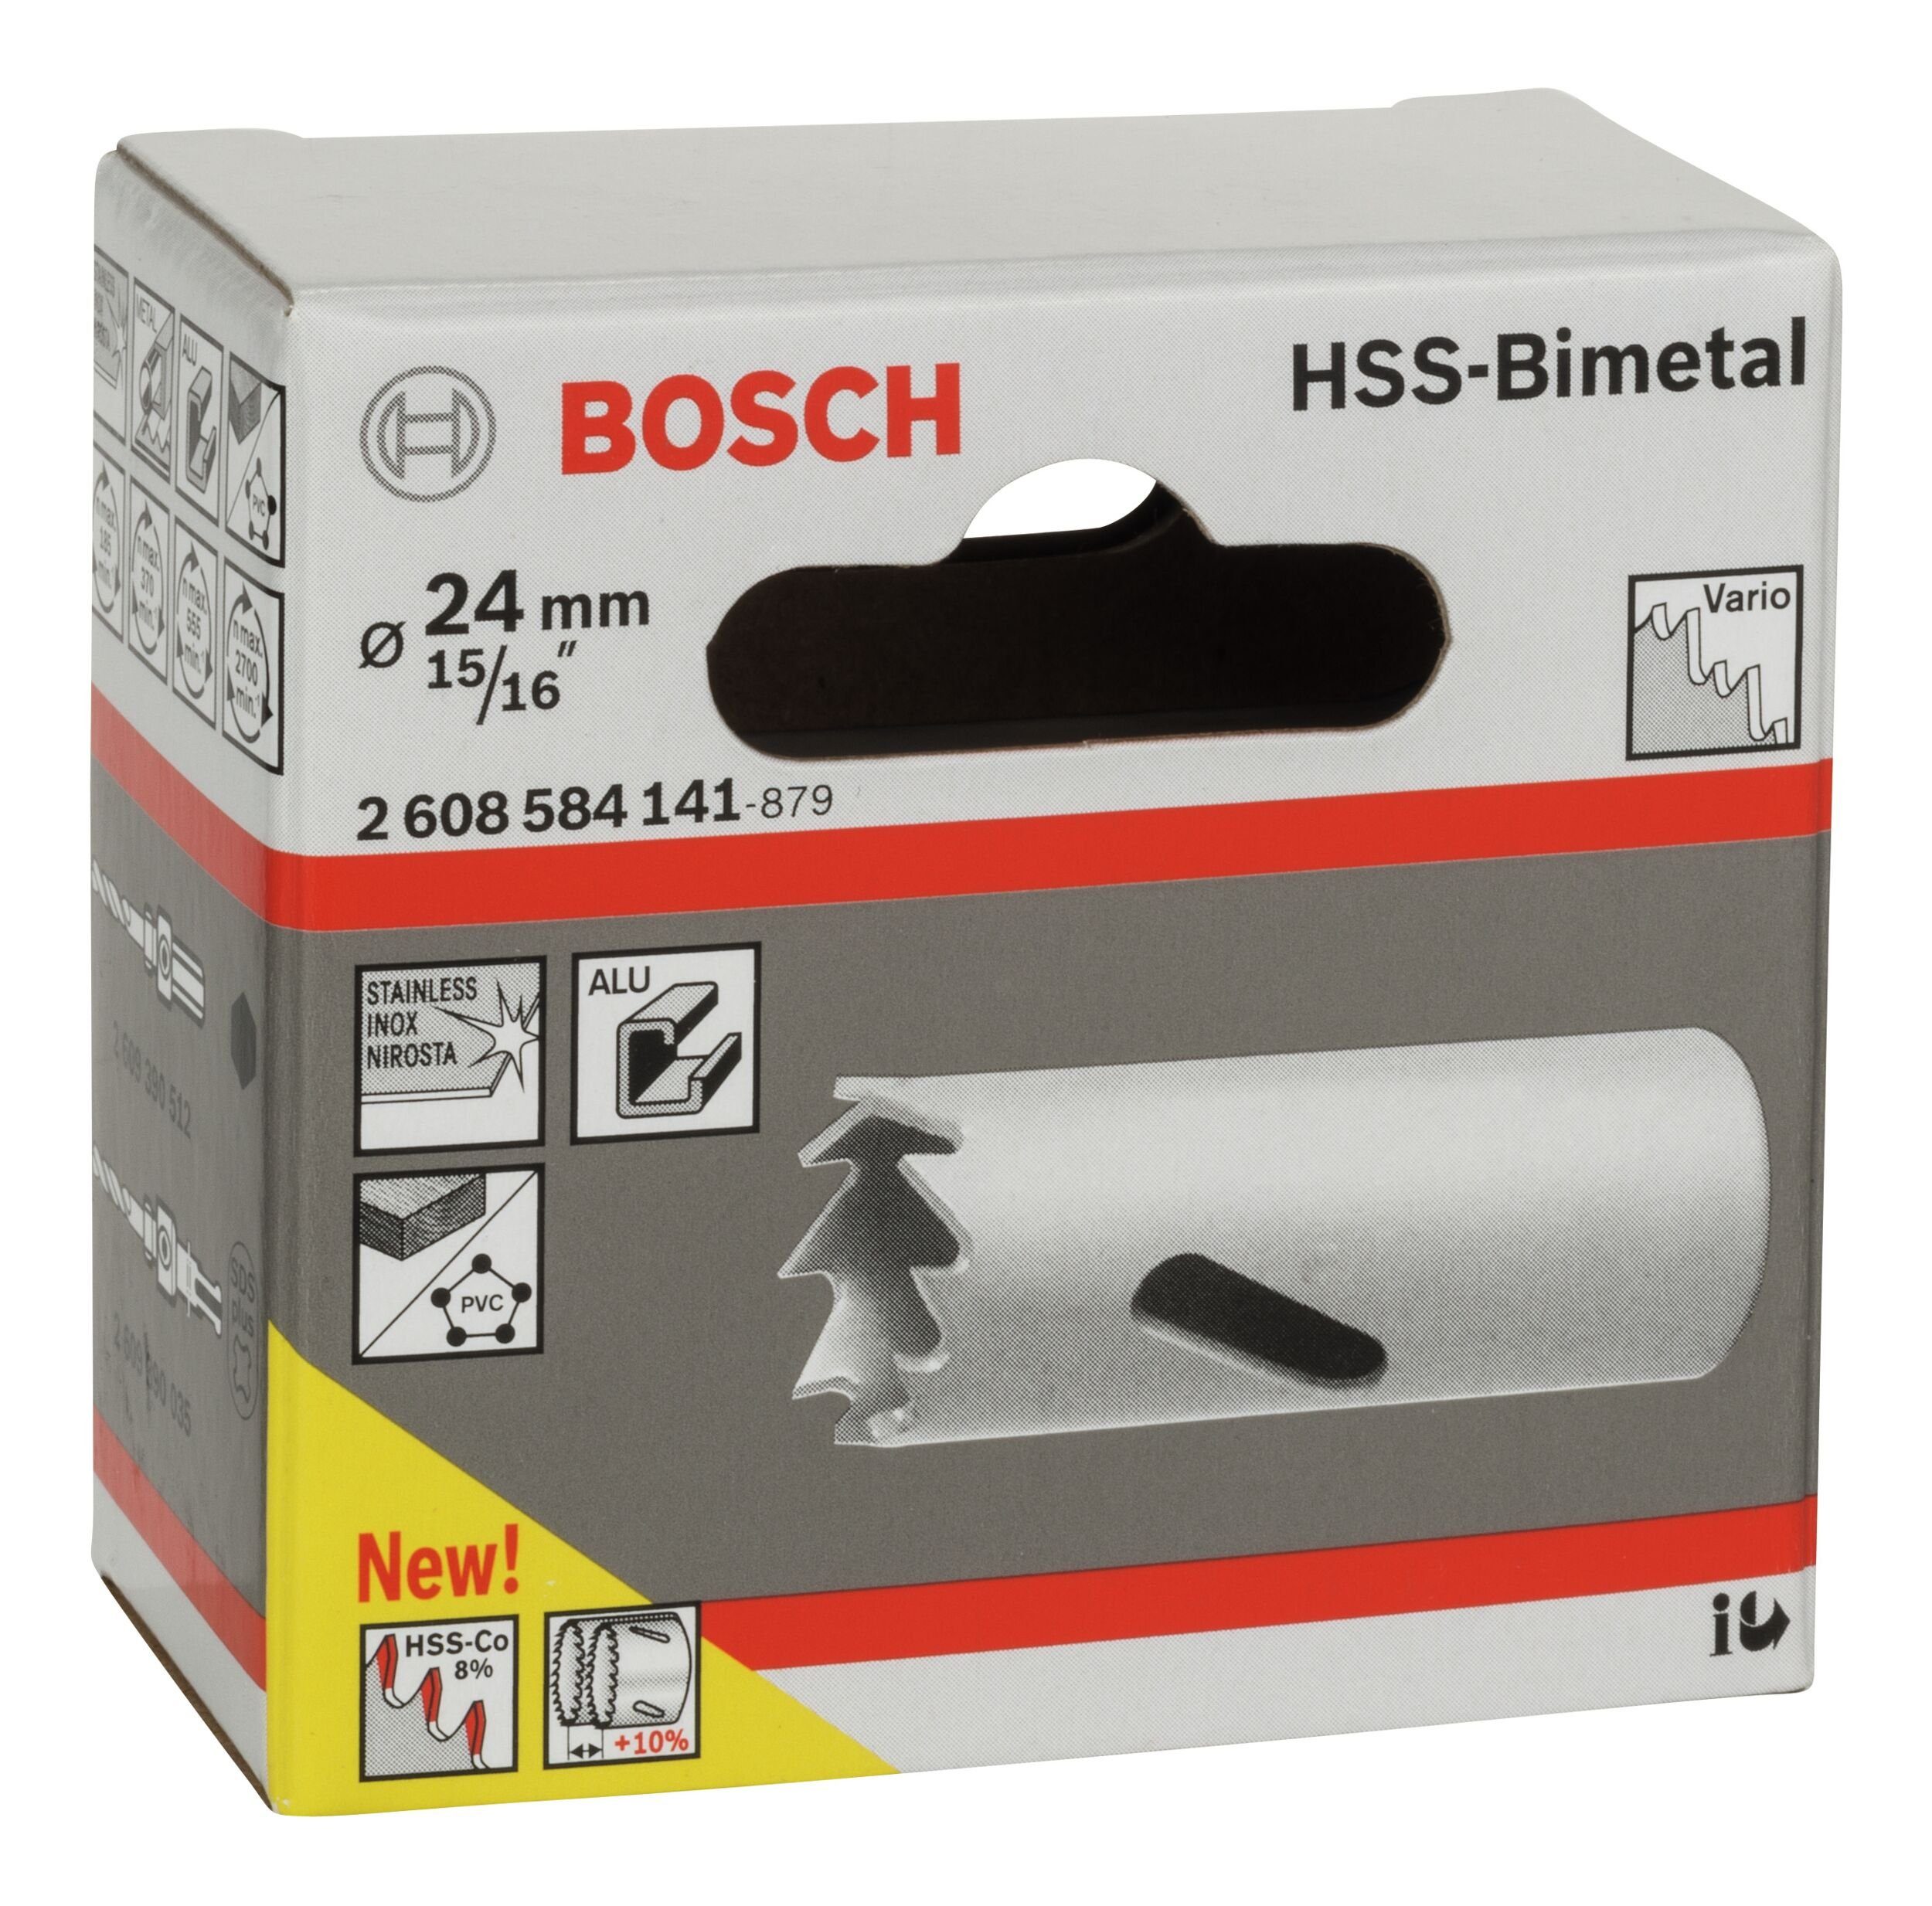 24 HSS-Bimetall Lochsäge, BOSCH Ø / Standardadapter 15/16" Accessories Bosch - mm, für